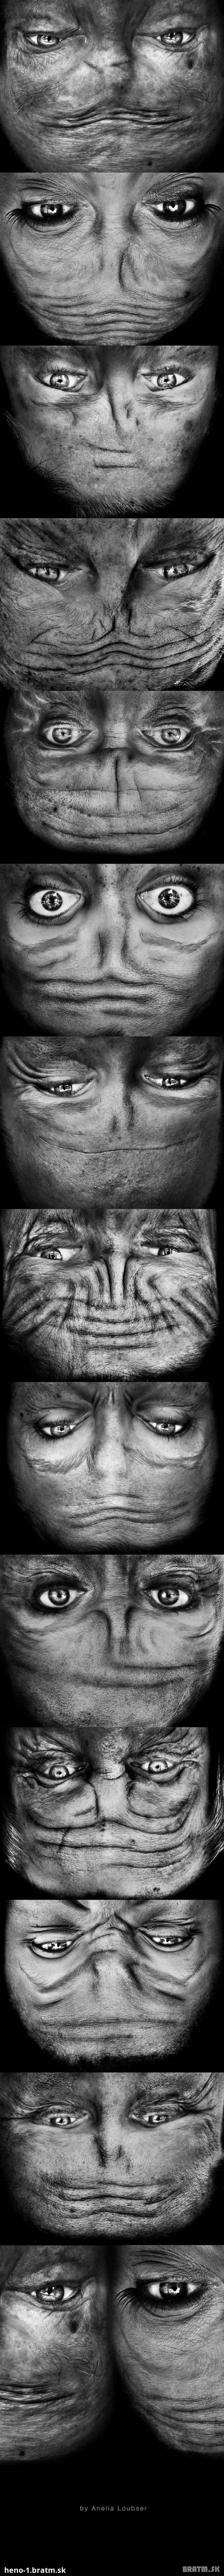 Otočené tváre ľudí vyzerajú ako mimozemšťania :D Pozri si tieto zaujímavé fotografie :)